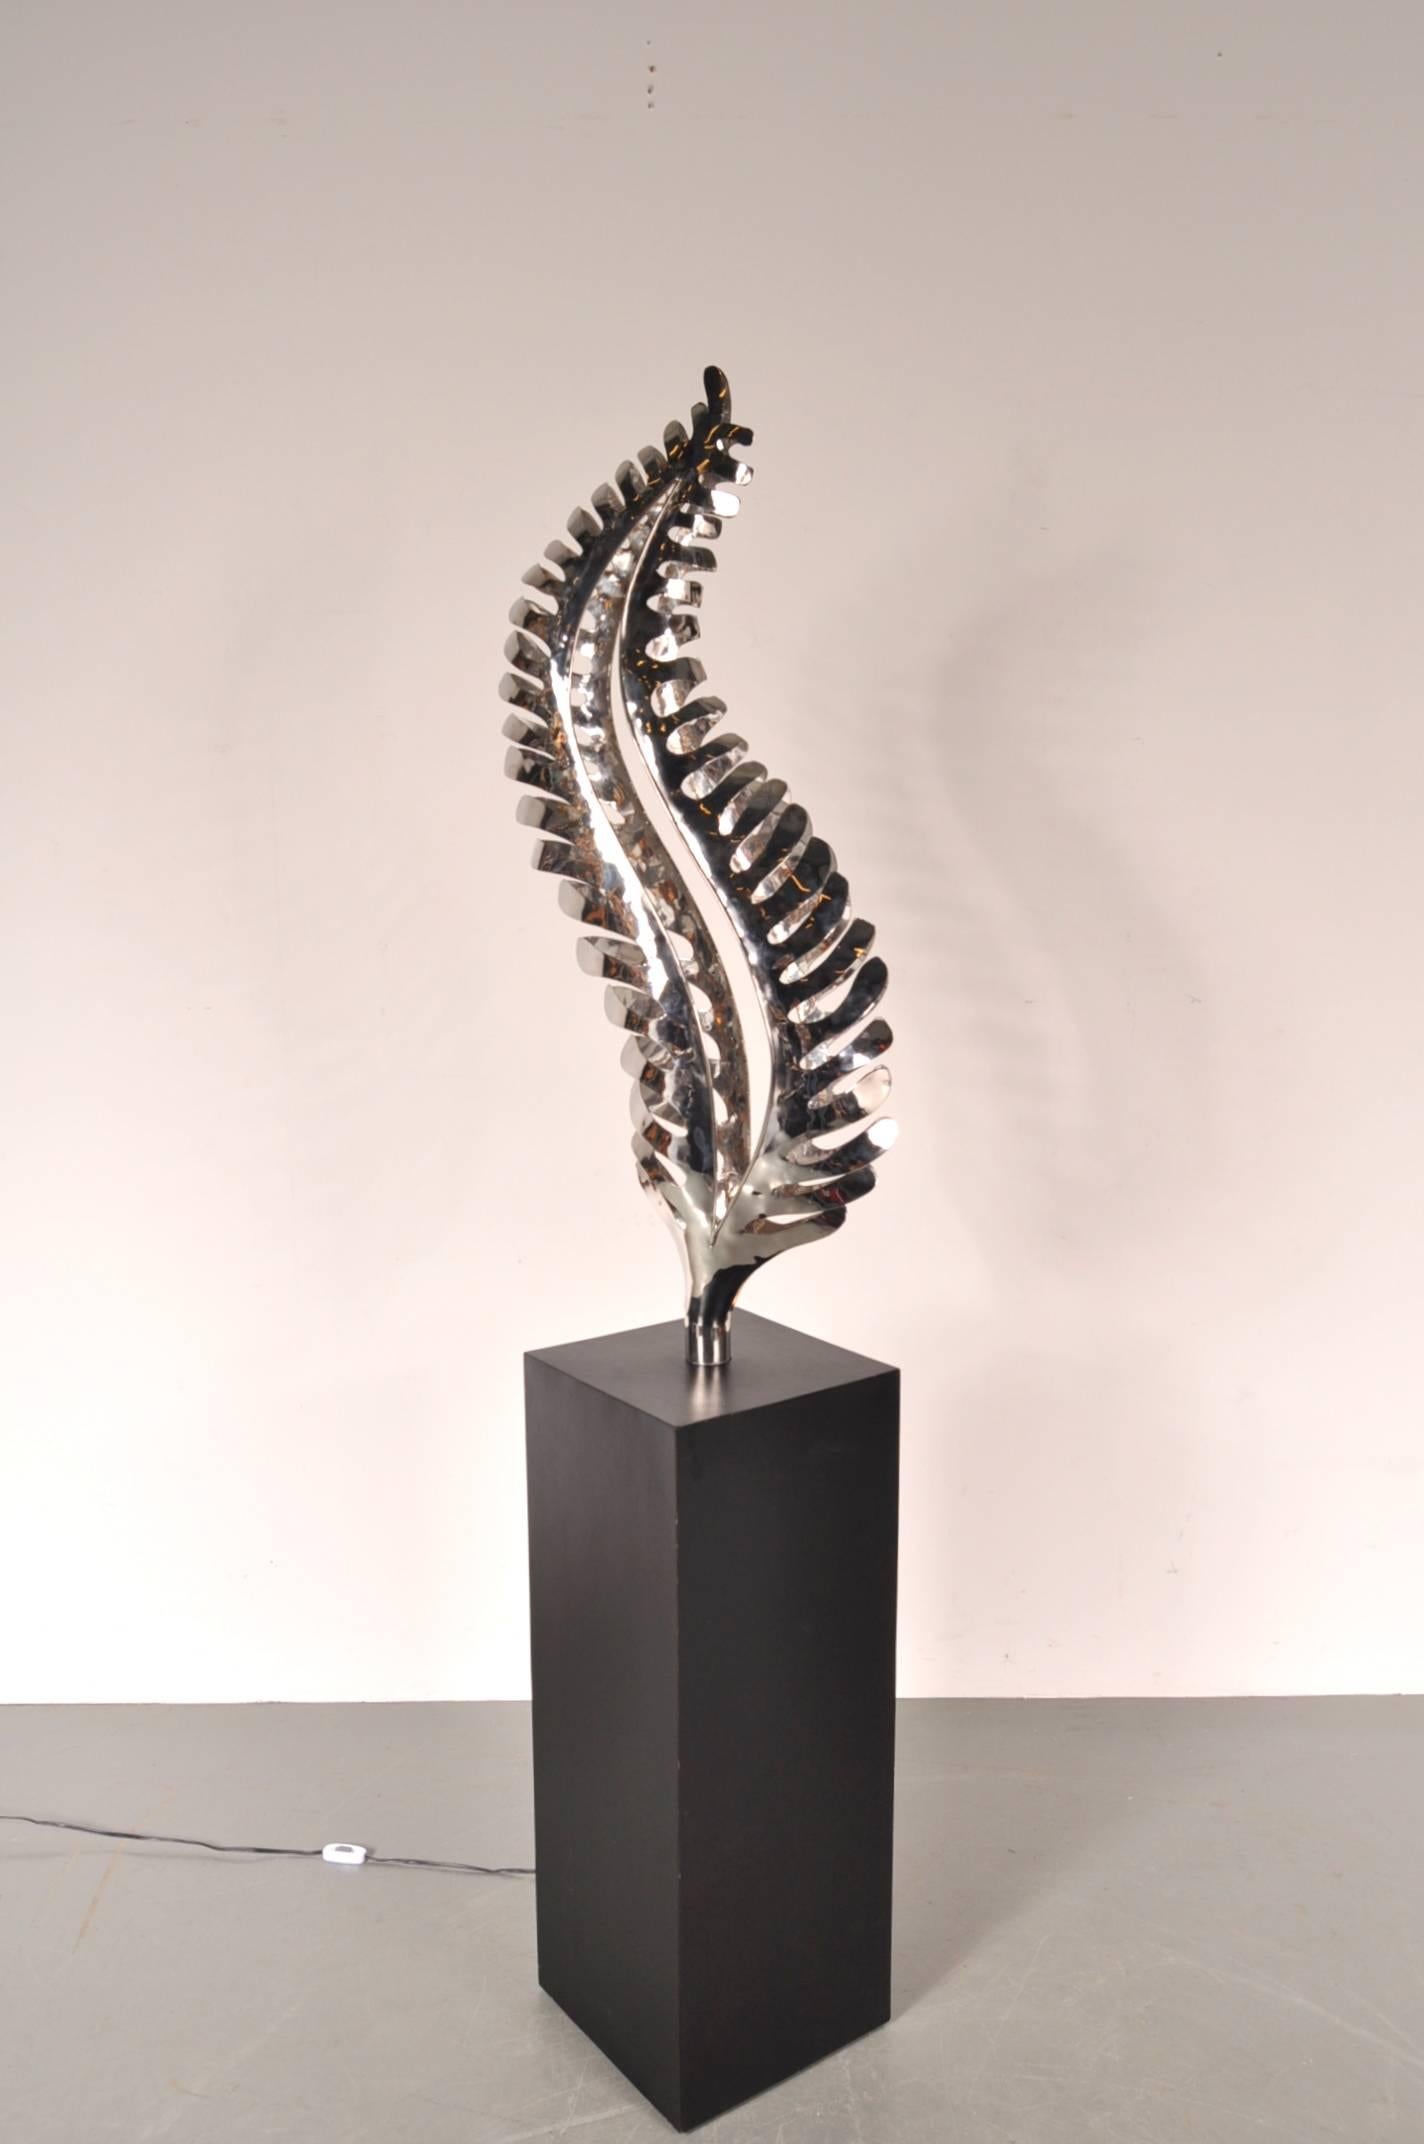 Superbe sculpture en métal chromé avec lumière intégrée, conçue aux Pays-Bas, vers 1980.

La sculpture repose sur une base en bois noir, qui contraste joliment avec le chrome dont est faite la pièce. La sculpture a la forme d'une grande feuille,